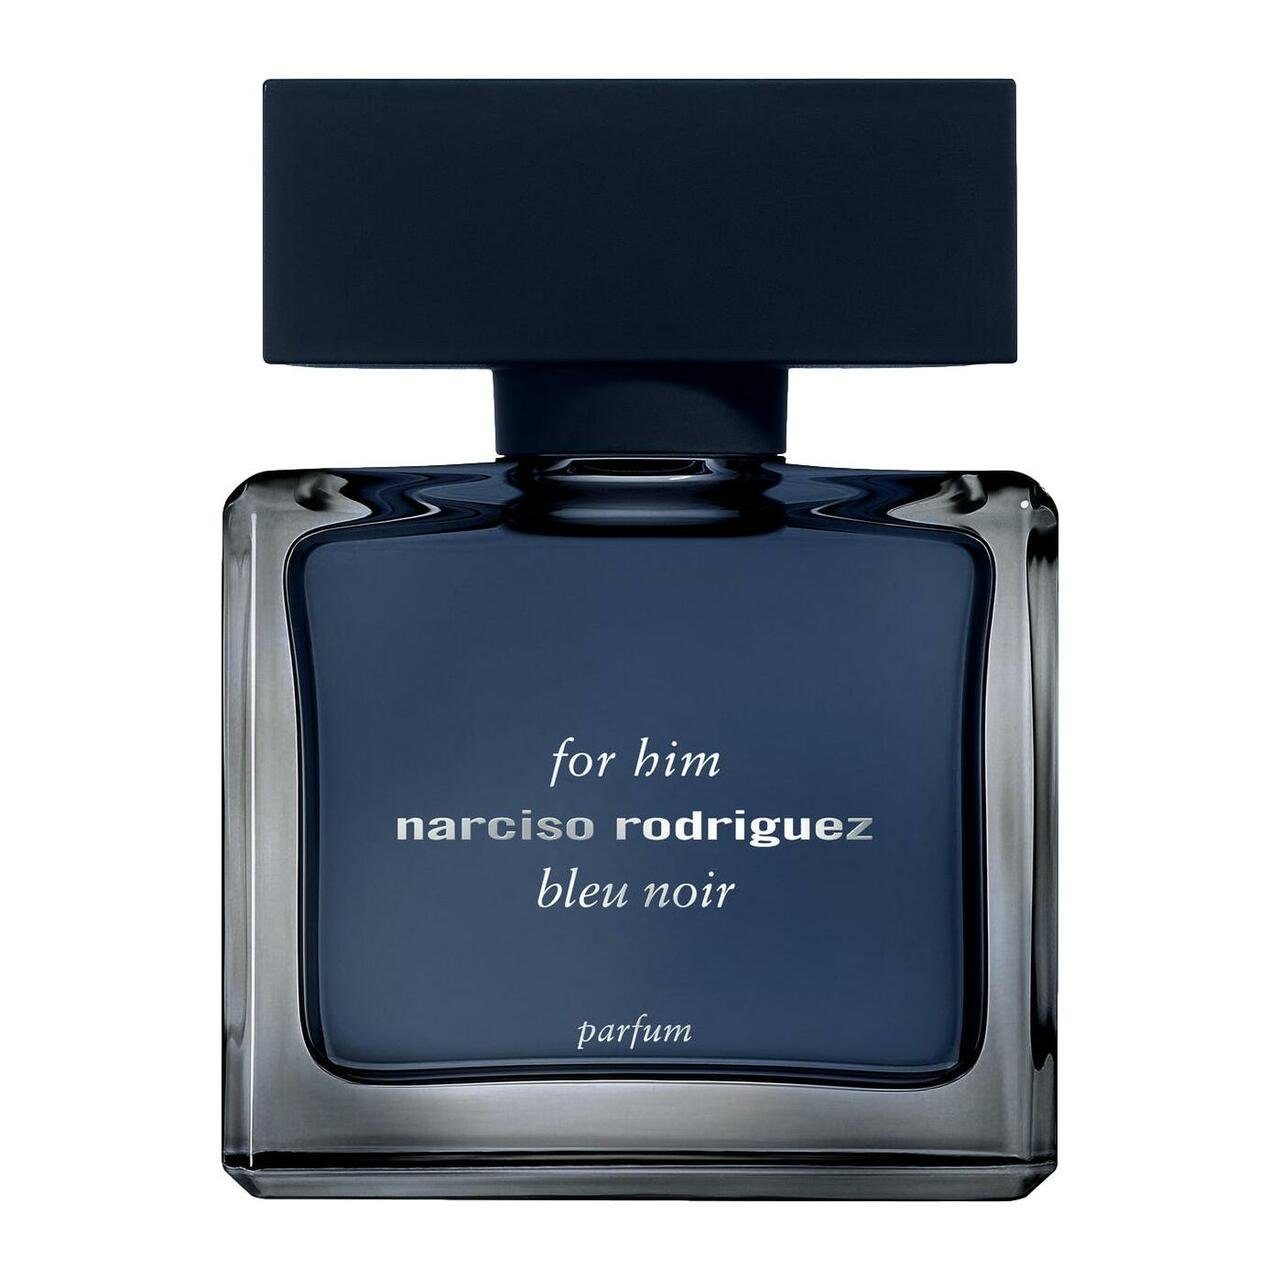 Narcisco Rodriguez Eau de Parfum For Him Bleu Noir Parfum